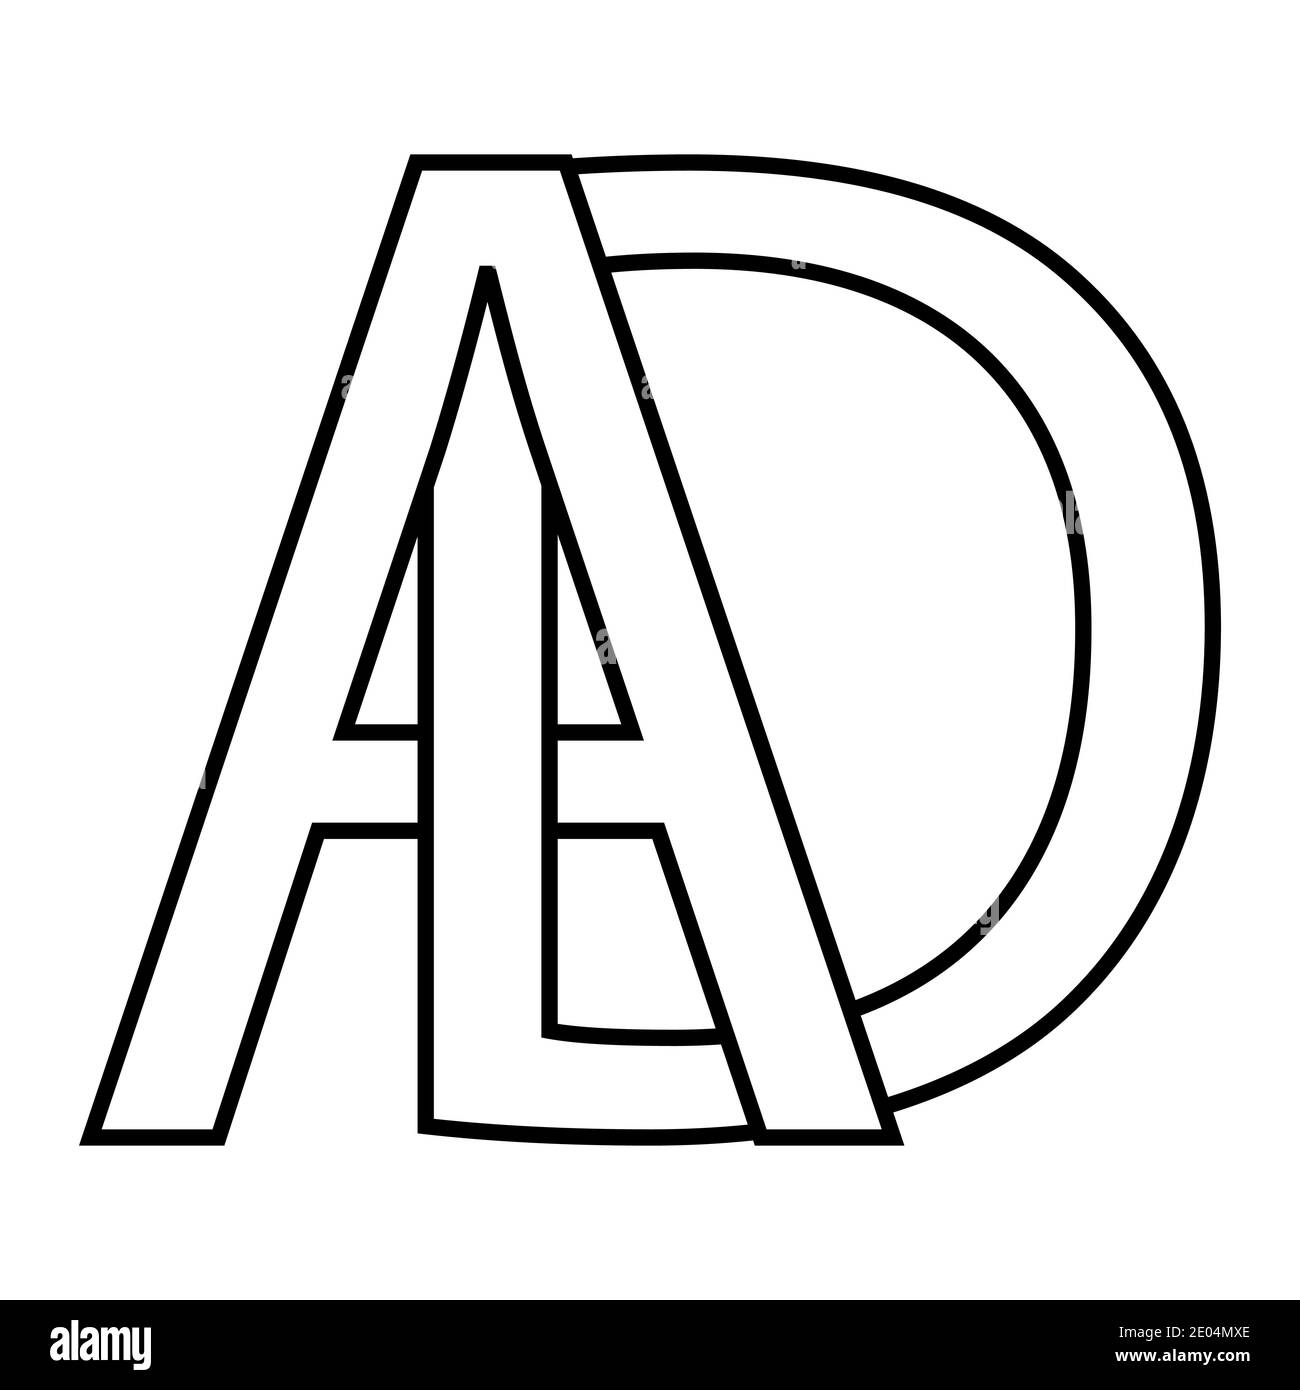 Logo-Anzeige Symbol Zeichen zwei Zeilensprungbuchstaben A D, Vektor-Logo-Anzeige erste Großbuchstaben Muster Alphabet a d Stock Vektor